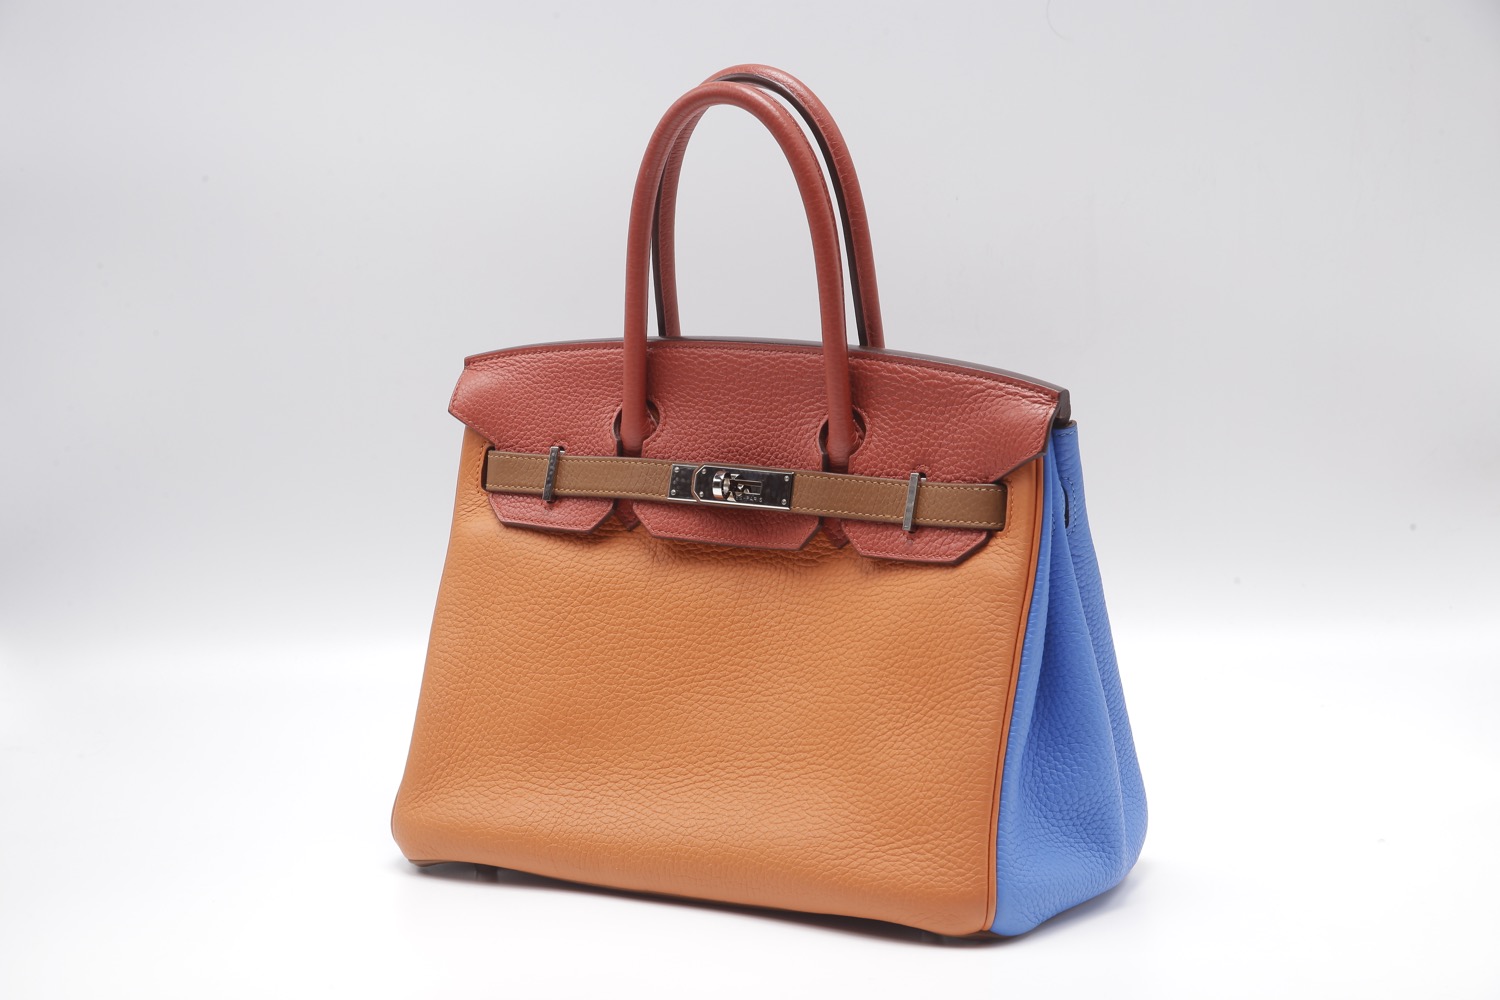 Hermes 2012 Kelly 35 Arlequin Bag Limited Edition.